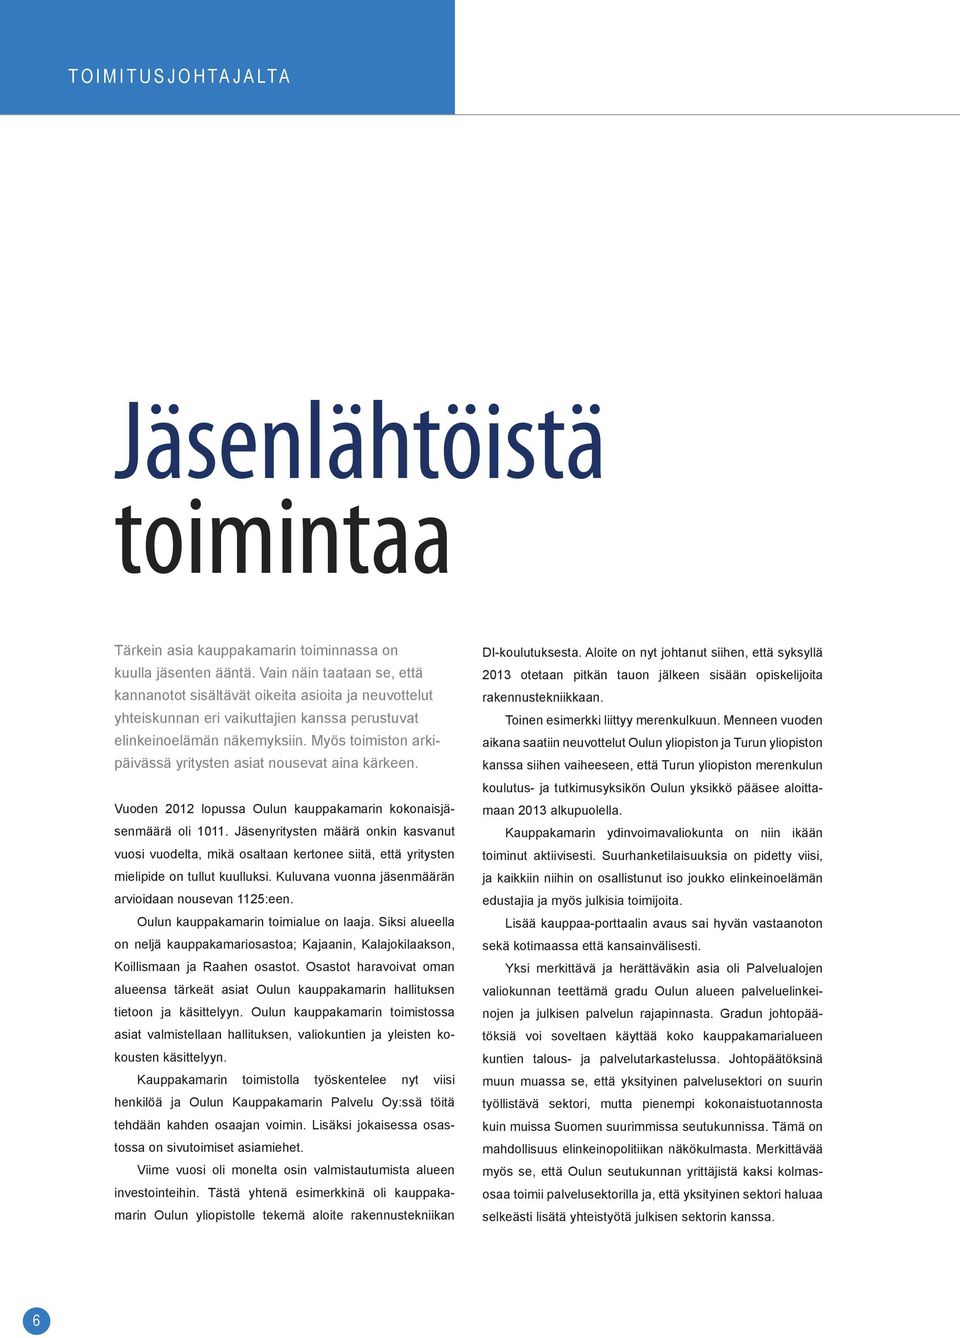 Myös toimiston arkipäivässä yritysten asiat nousevat aina kärkeen. Vuoden 2012 lopussa Oulun kauppakamarin kokonaisjäsenmäärä oli 1011.